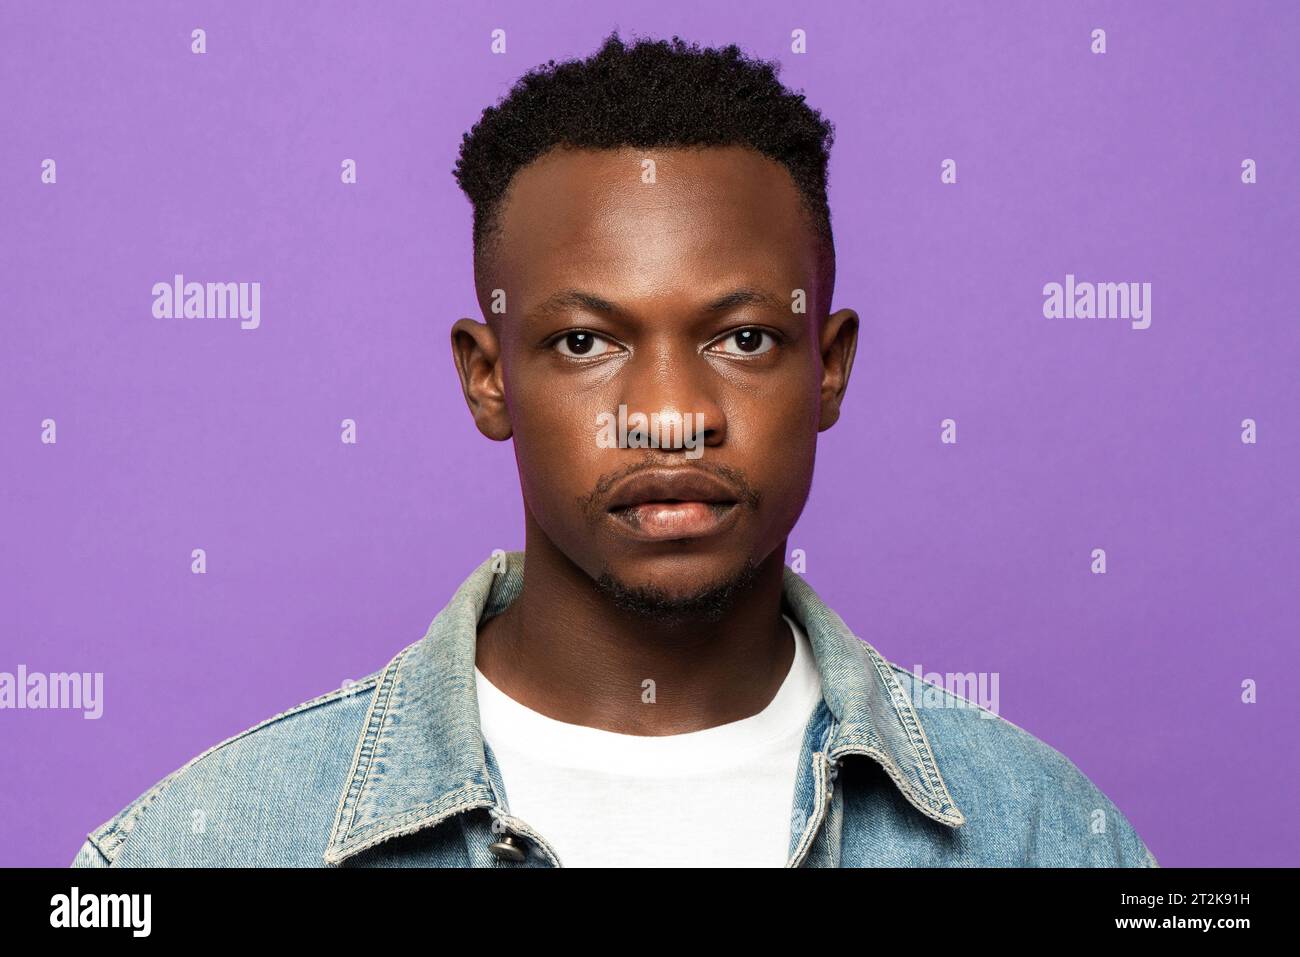 Ritratto del volto di un giovane e affascinante uomo africano che guarda la fotocamera su uno sfondo isolato in uno studio di colore viola Foto Stock